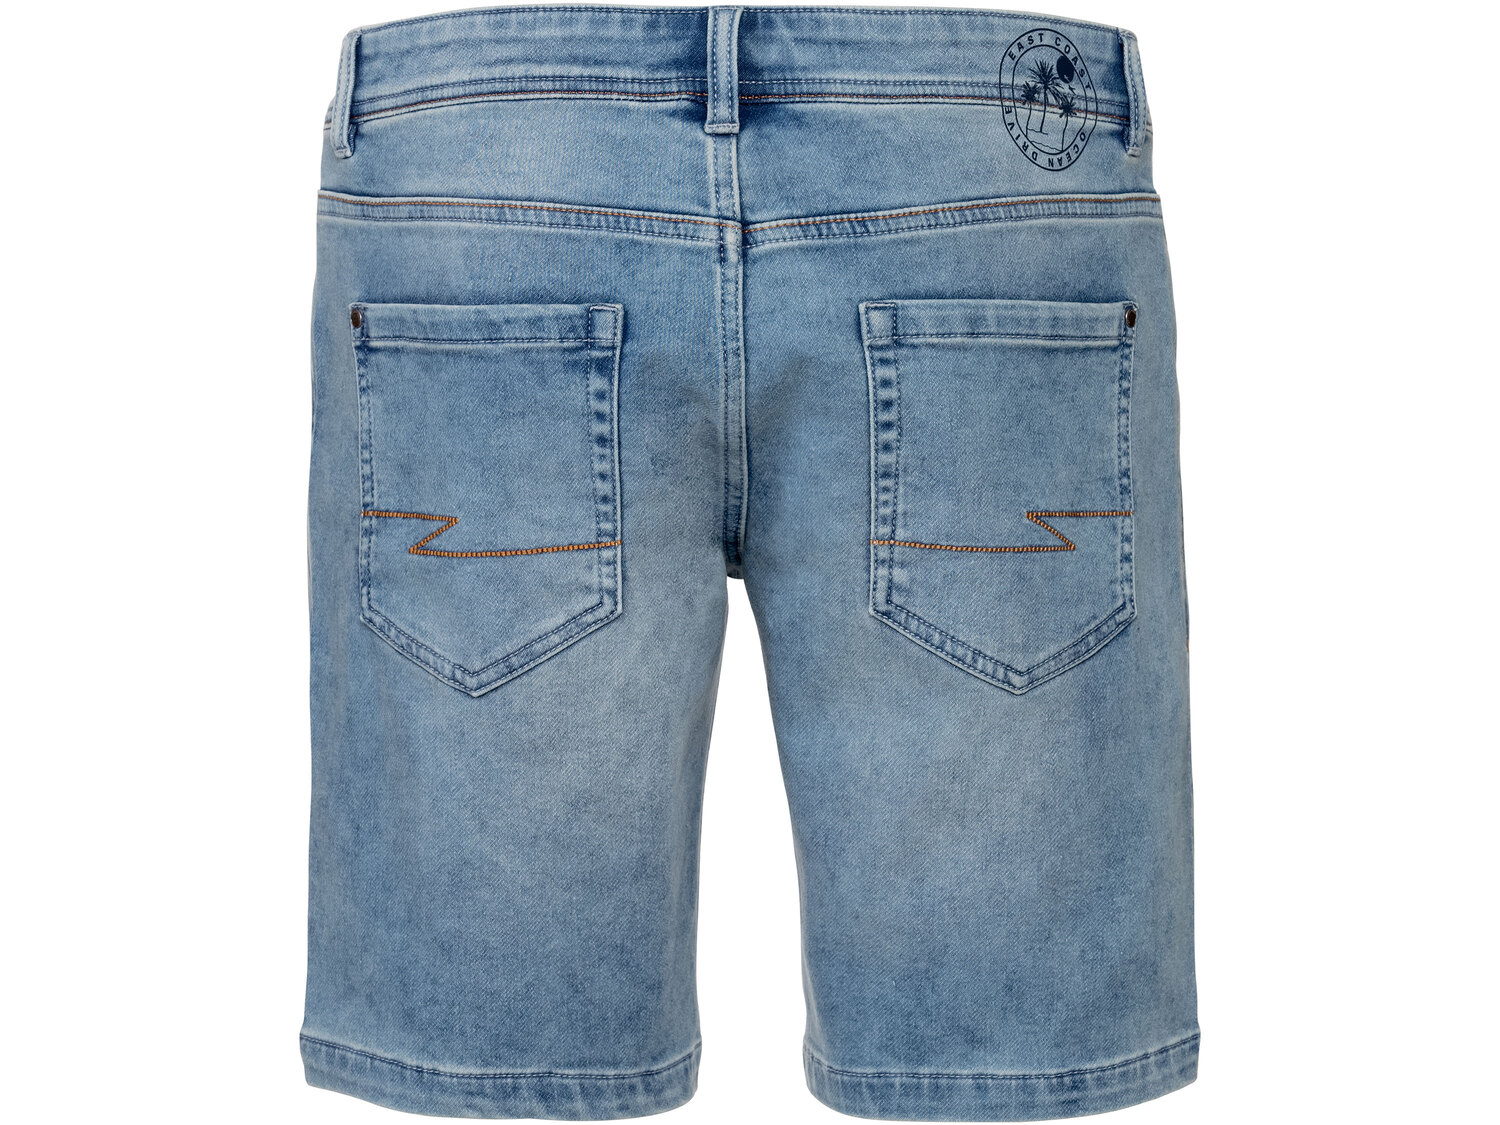 Szorty męskie , cena 39,99 PLN 
- rozmiary: 50-56
- wygląd jeansu, wygoda spodni ...